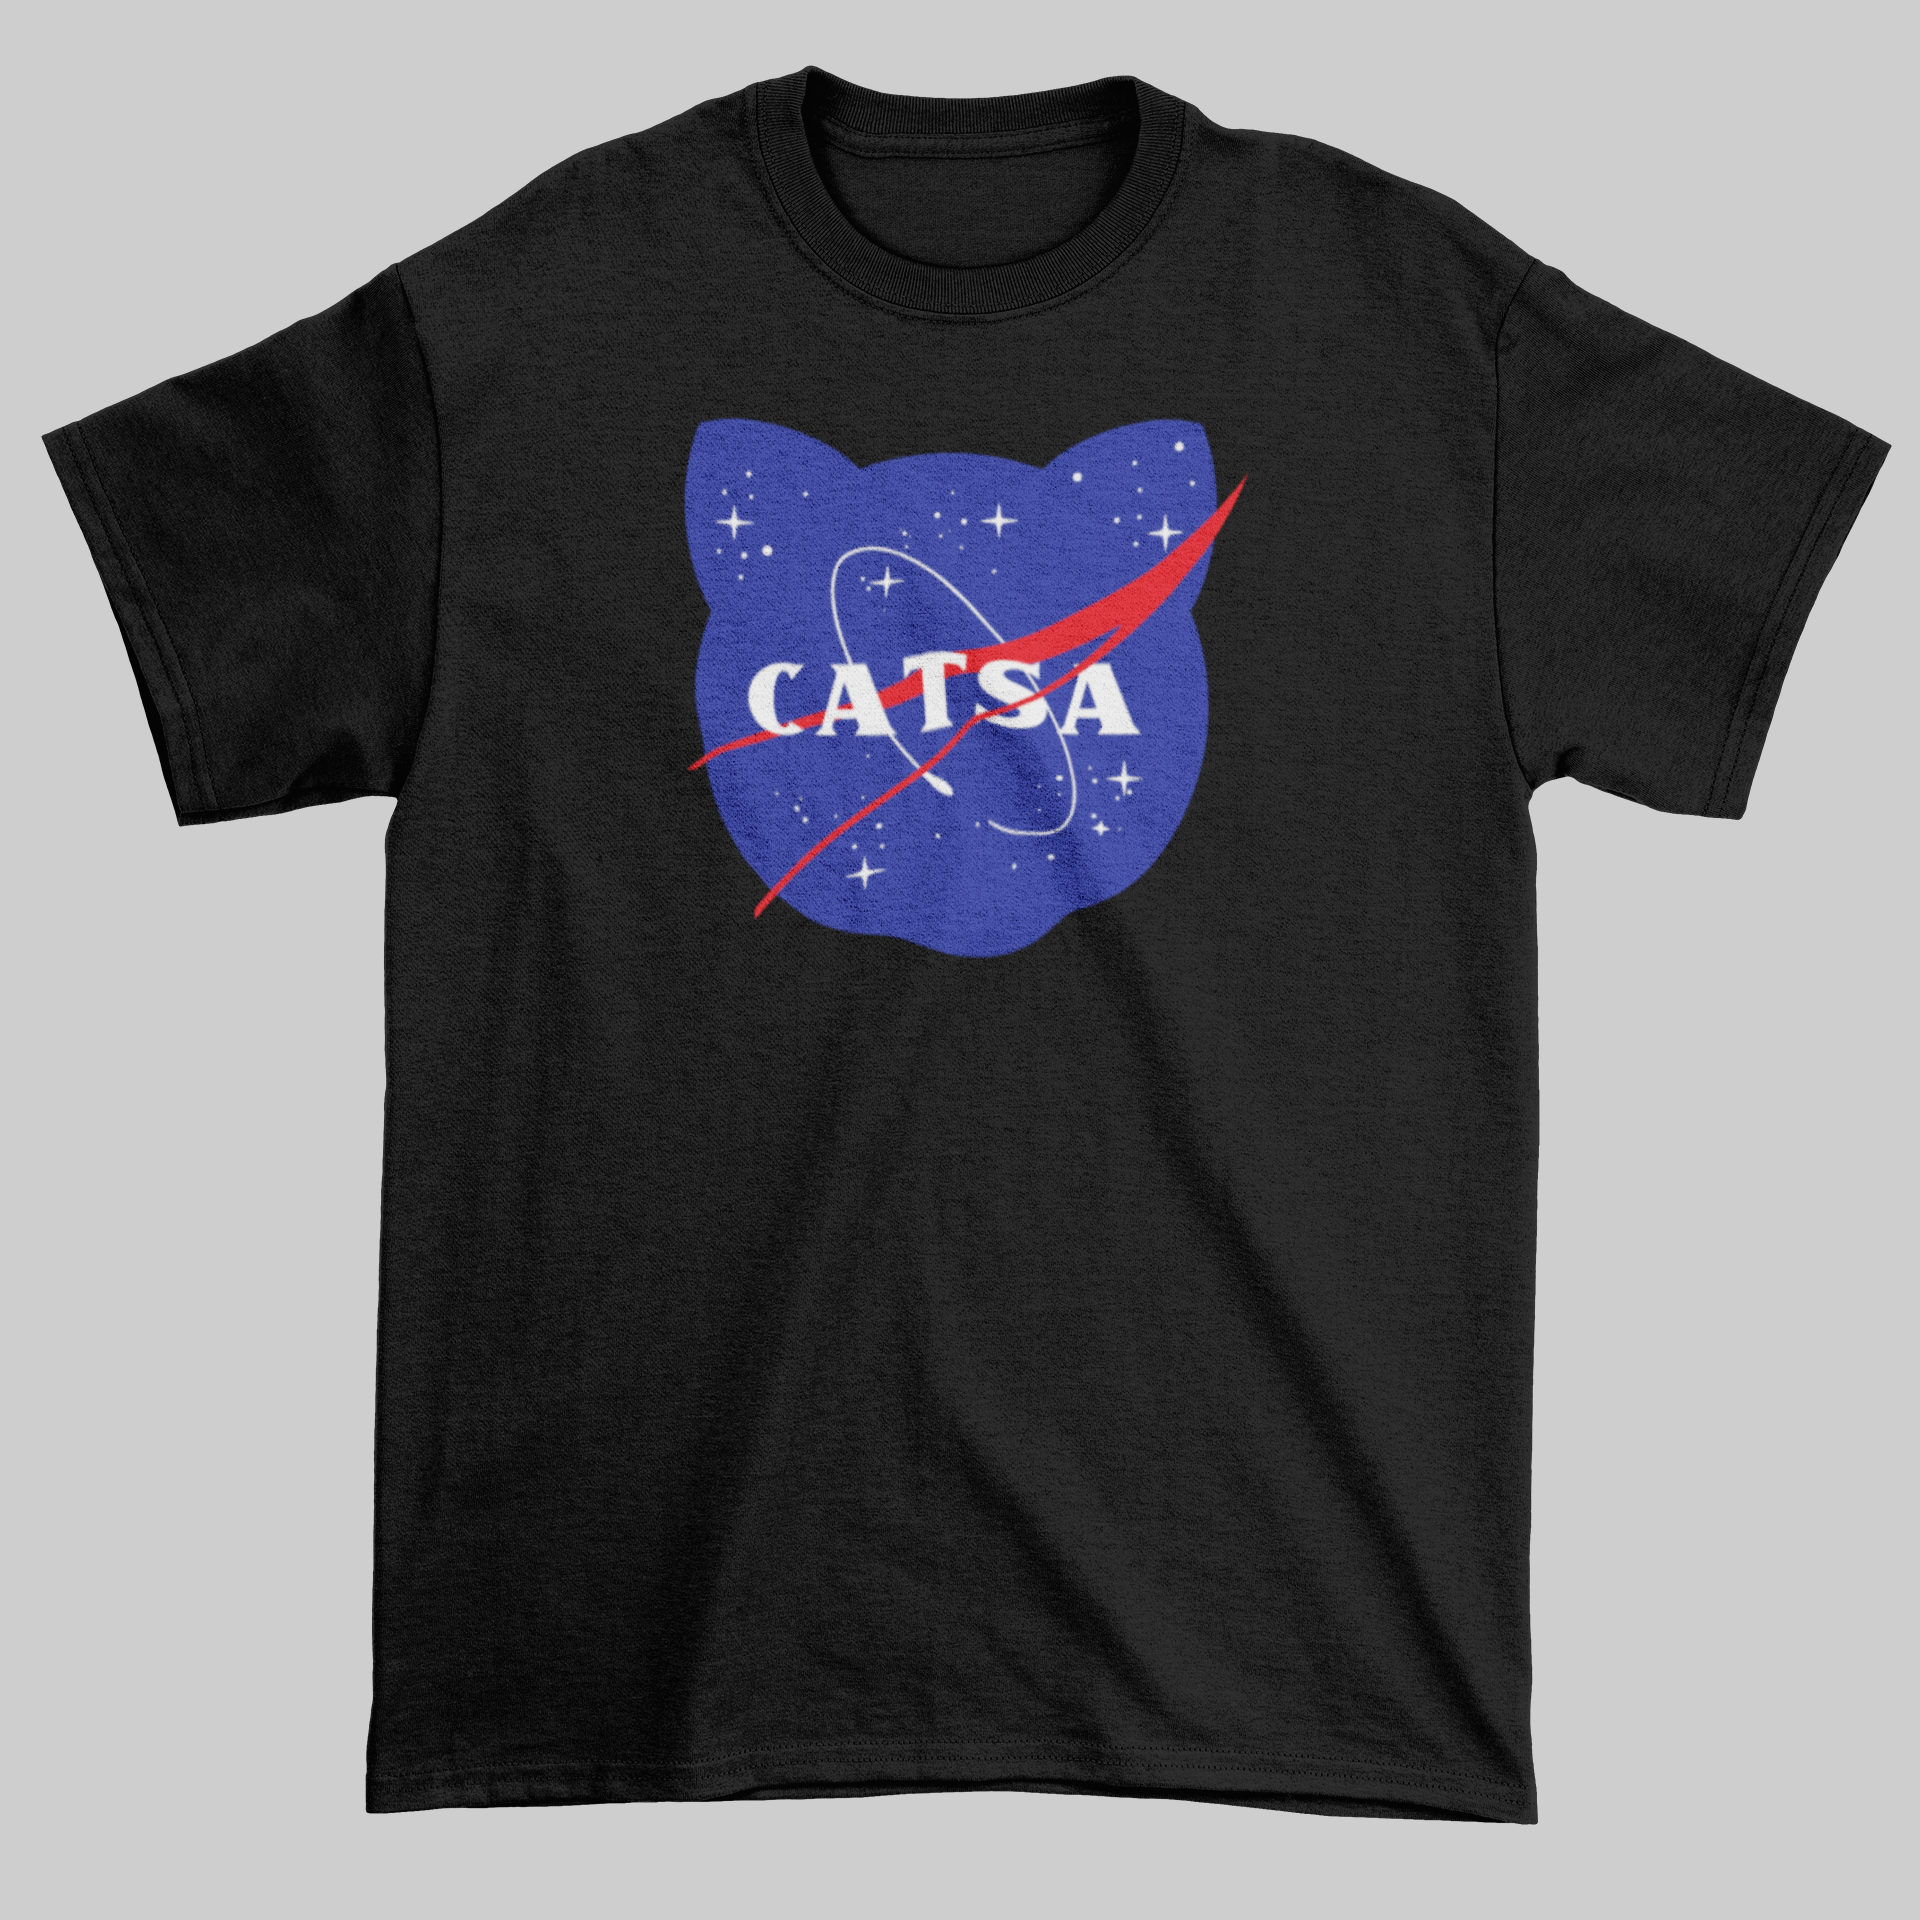 CATSA - Jay's Custom Prints